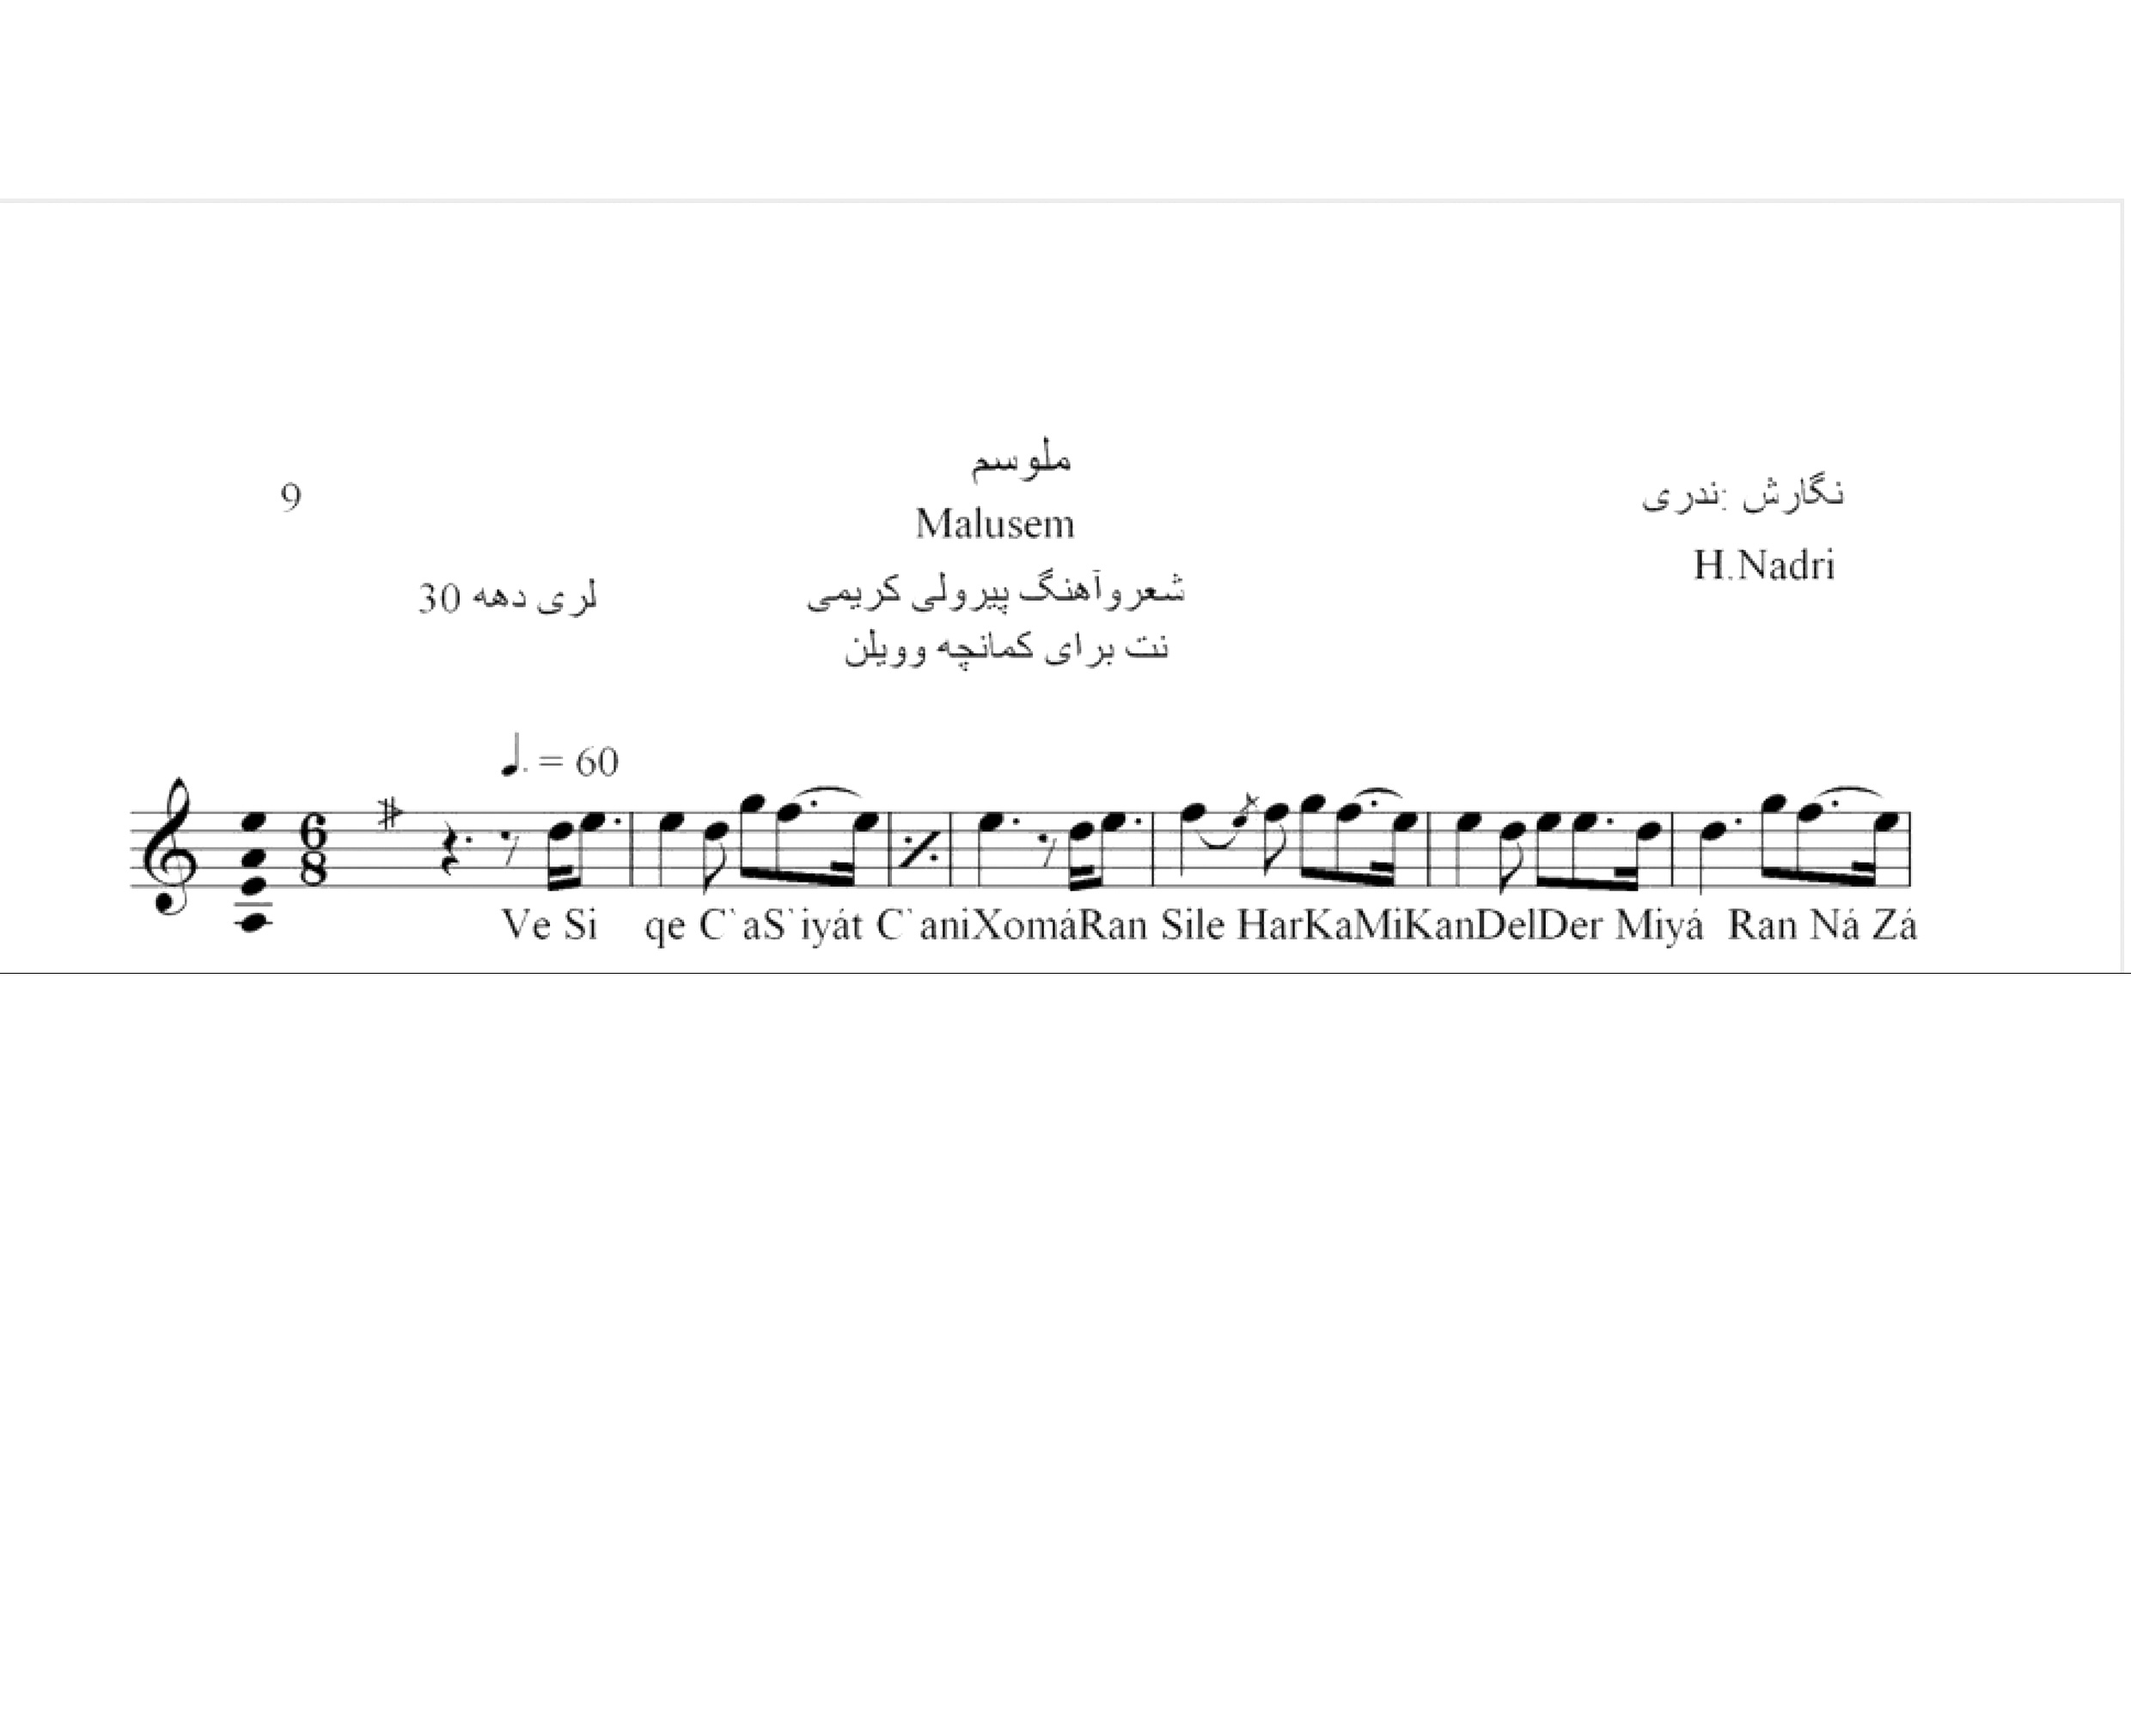 نت آهنگ محلی لری ملوسم حجت اله ندری قابل اجرا با کمانچه و دیگر سازها